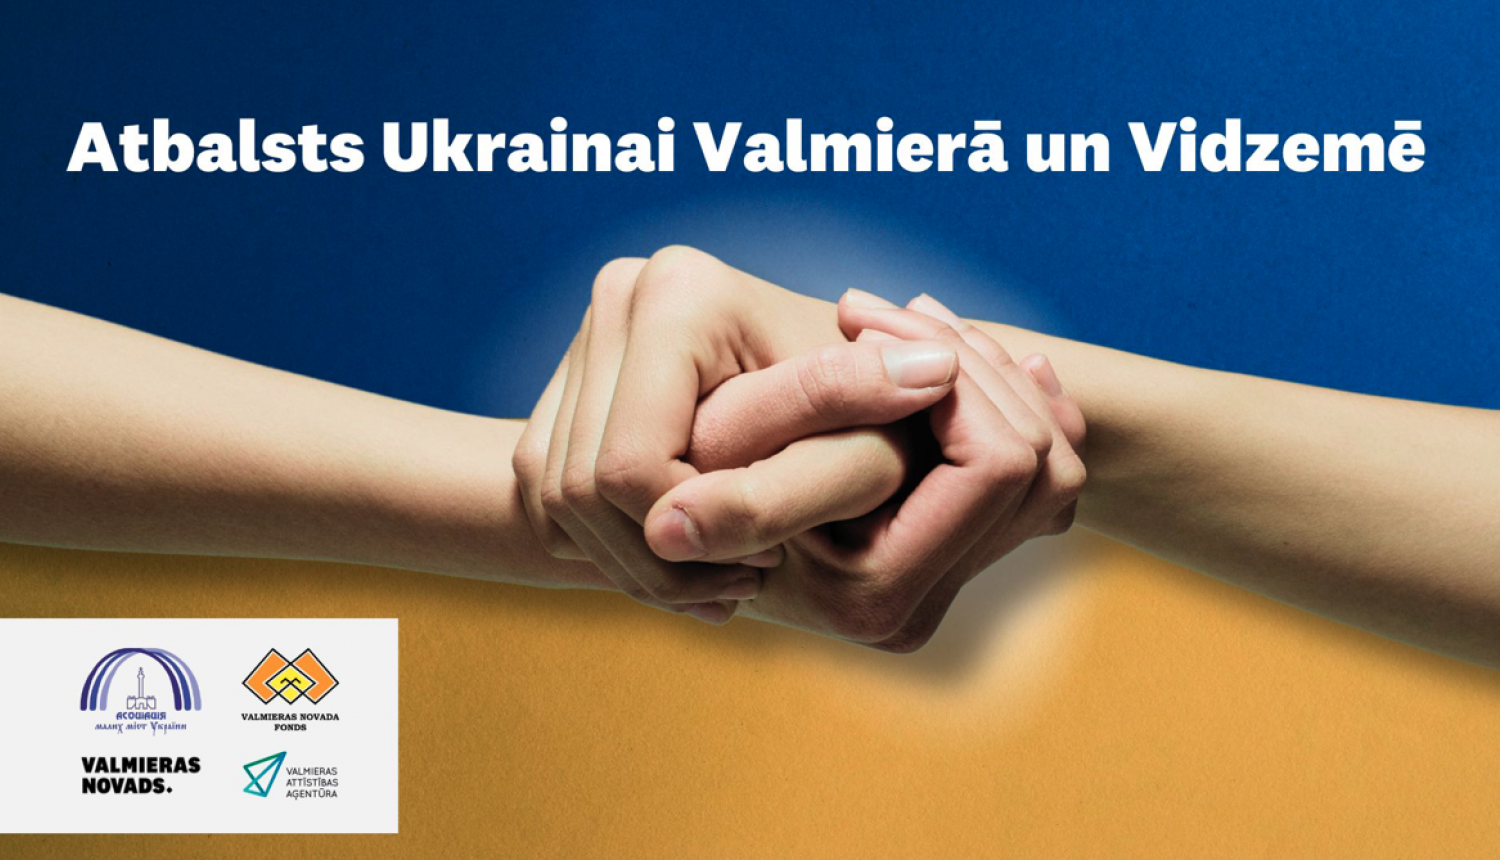 Rokas sadotas kopā uz Ukrainas karoga fona